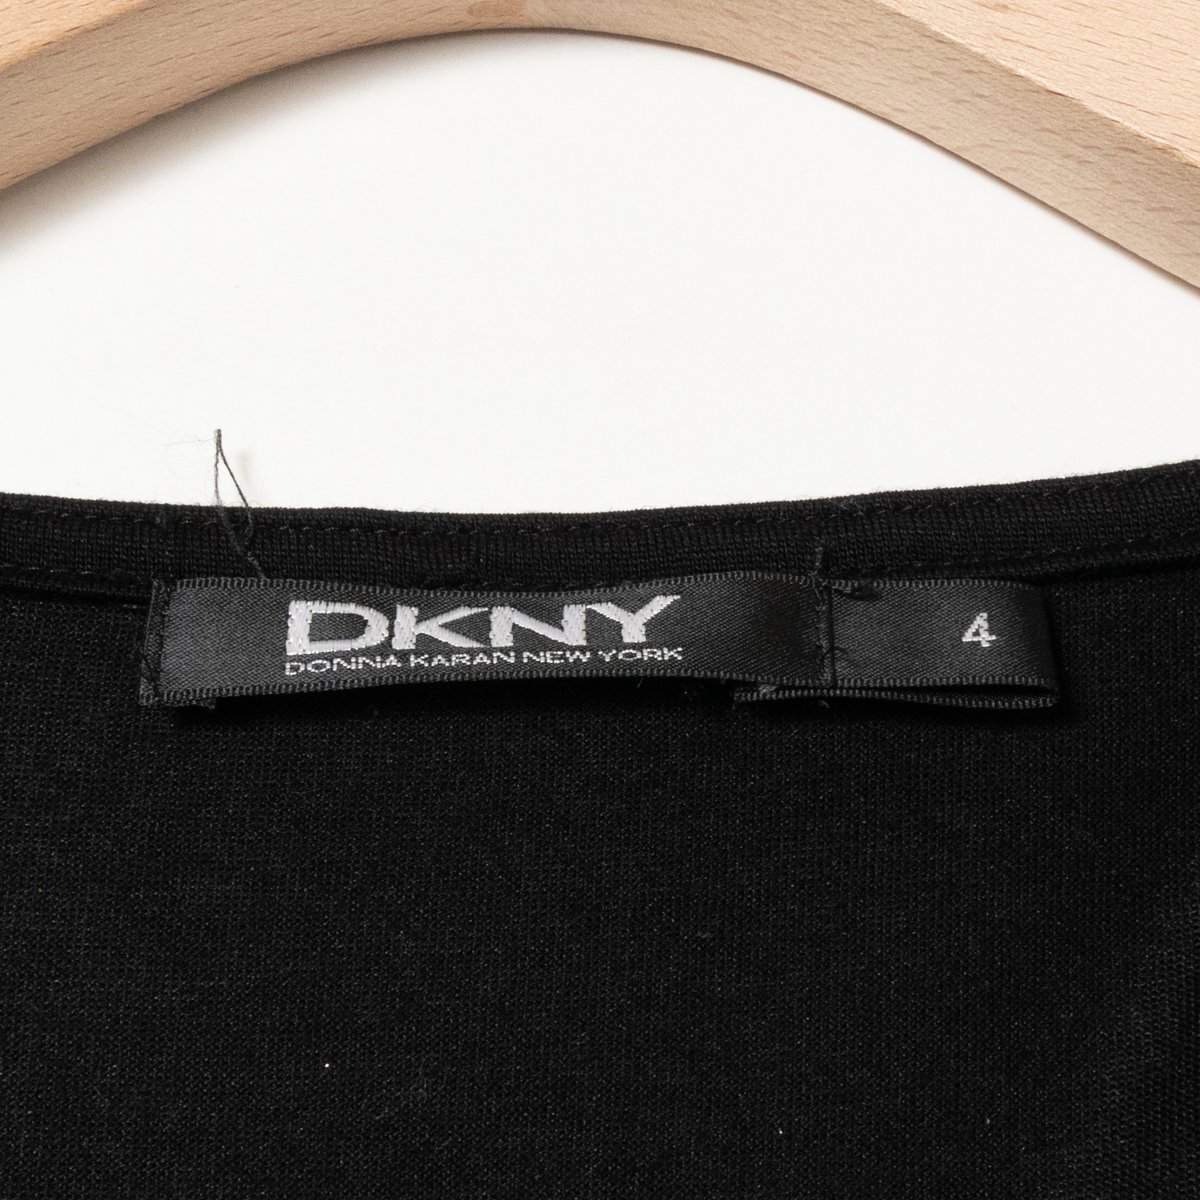 DKNY ダナキャラン 日本製 レオパード柄 ワンピース 豹柄 ロングワンピース 4 リヨセル ブラック ブラウン 綺麗め カジュアルの画像2